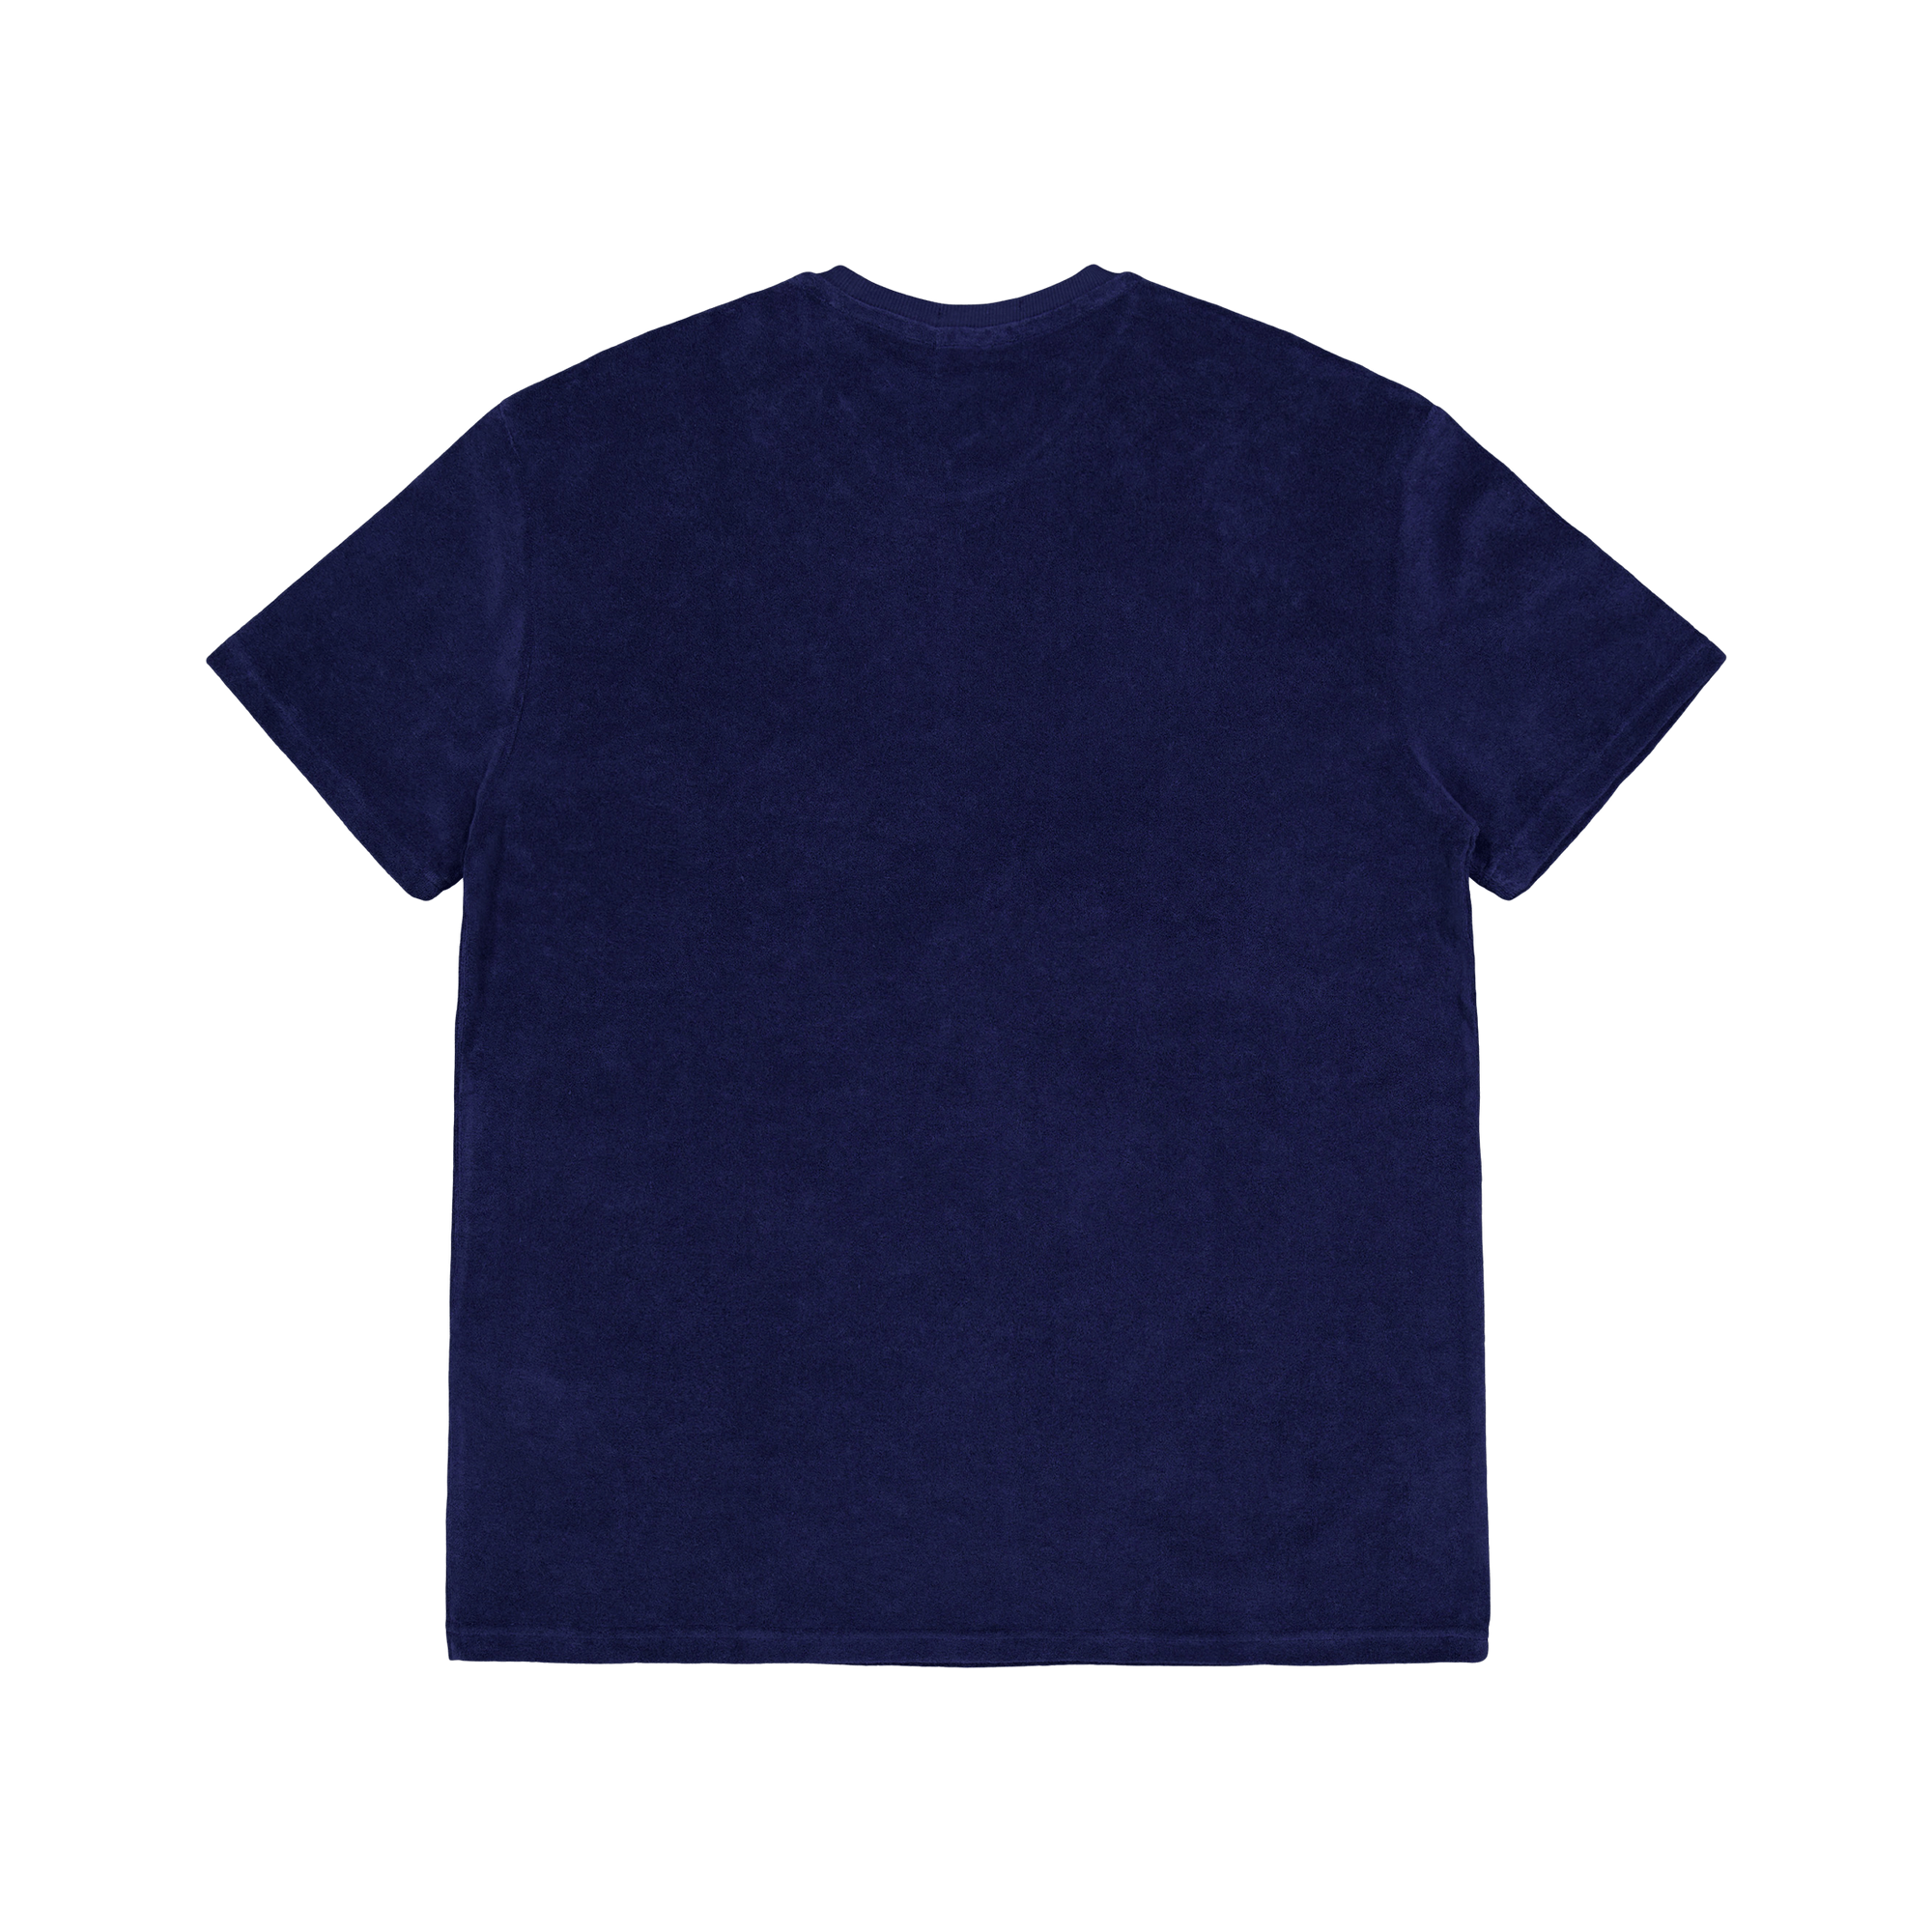 Cotton Terry S/s T-shirt Newport Navy